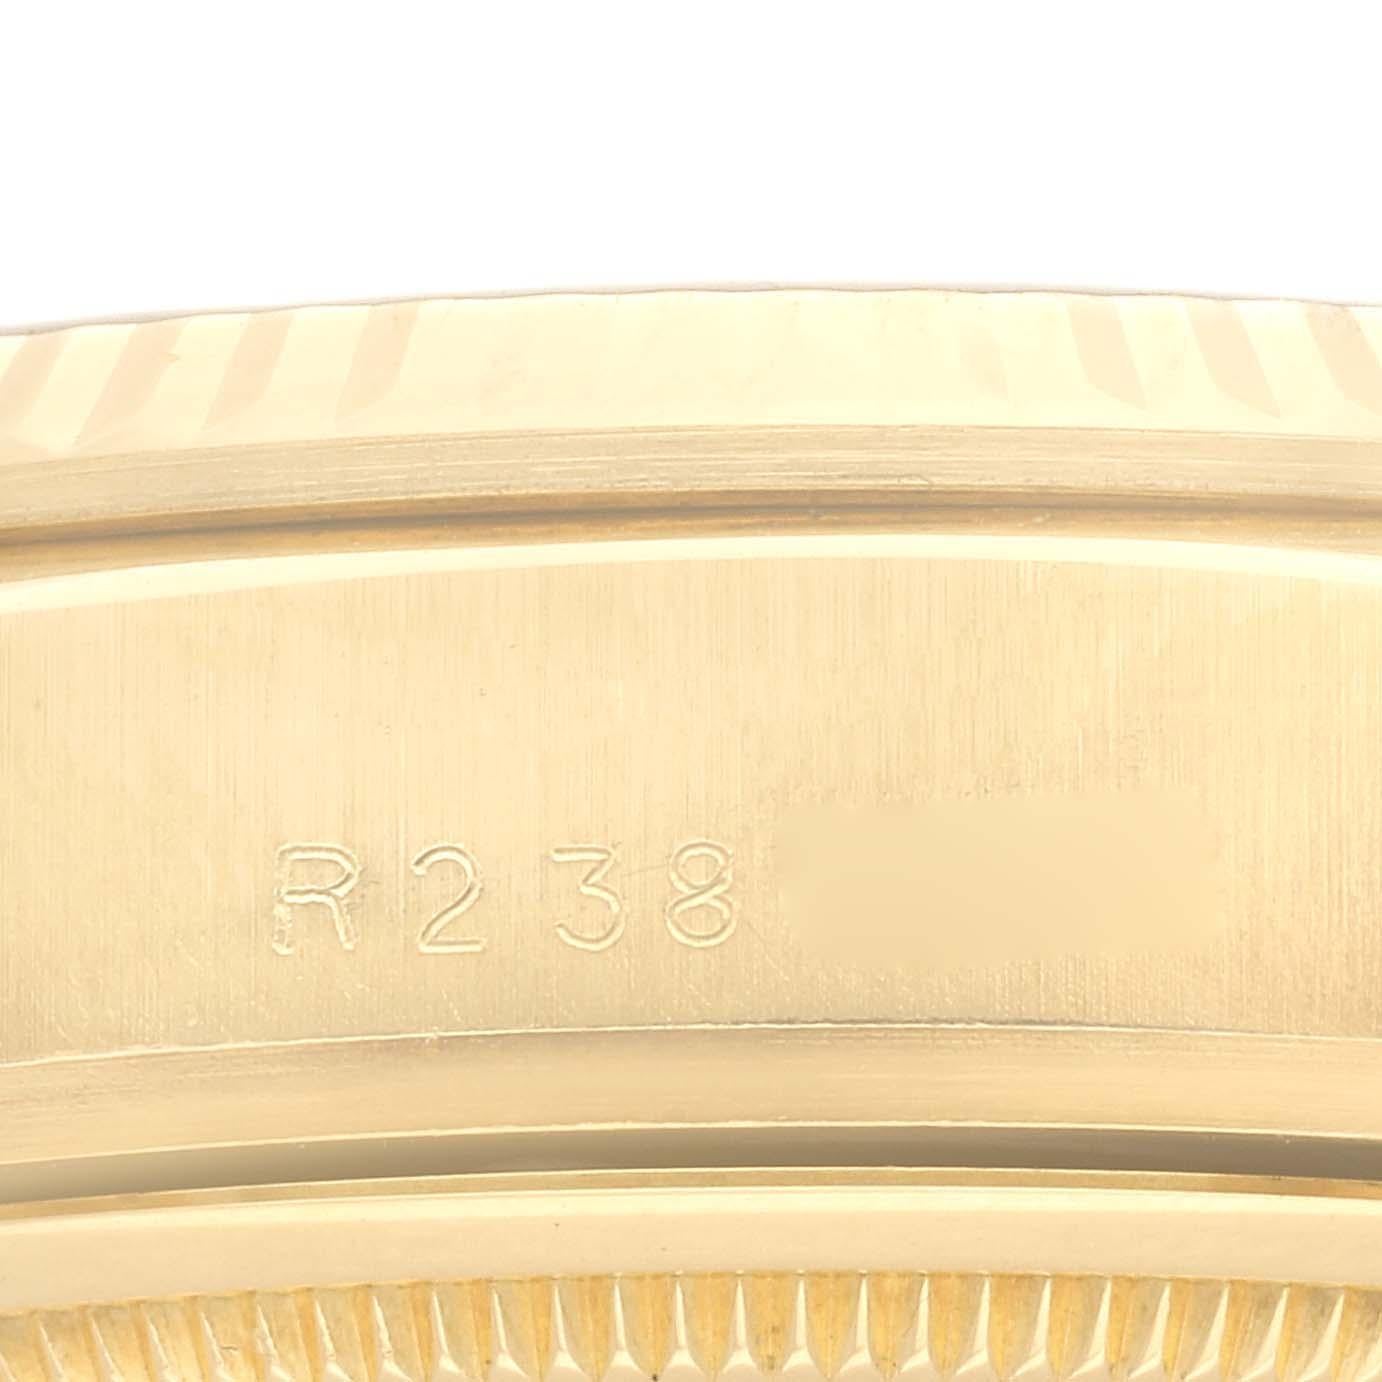 Rolex President Day-Date Gelbgold Diamant-Zifferblatt Herrenuhr 18038. Offiziell zertifiziertes Chronometer-Automatikwerk mit automatischem Aufzug. Oyster-Gehäuse aus 18 Karat Gelbgold mit einem Durchmesser von 36 mm. Rolex Logo auf einer Krone.